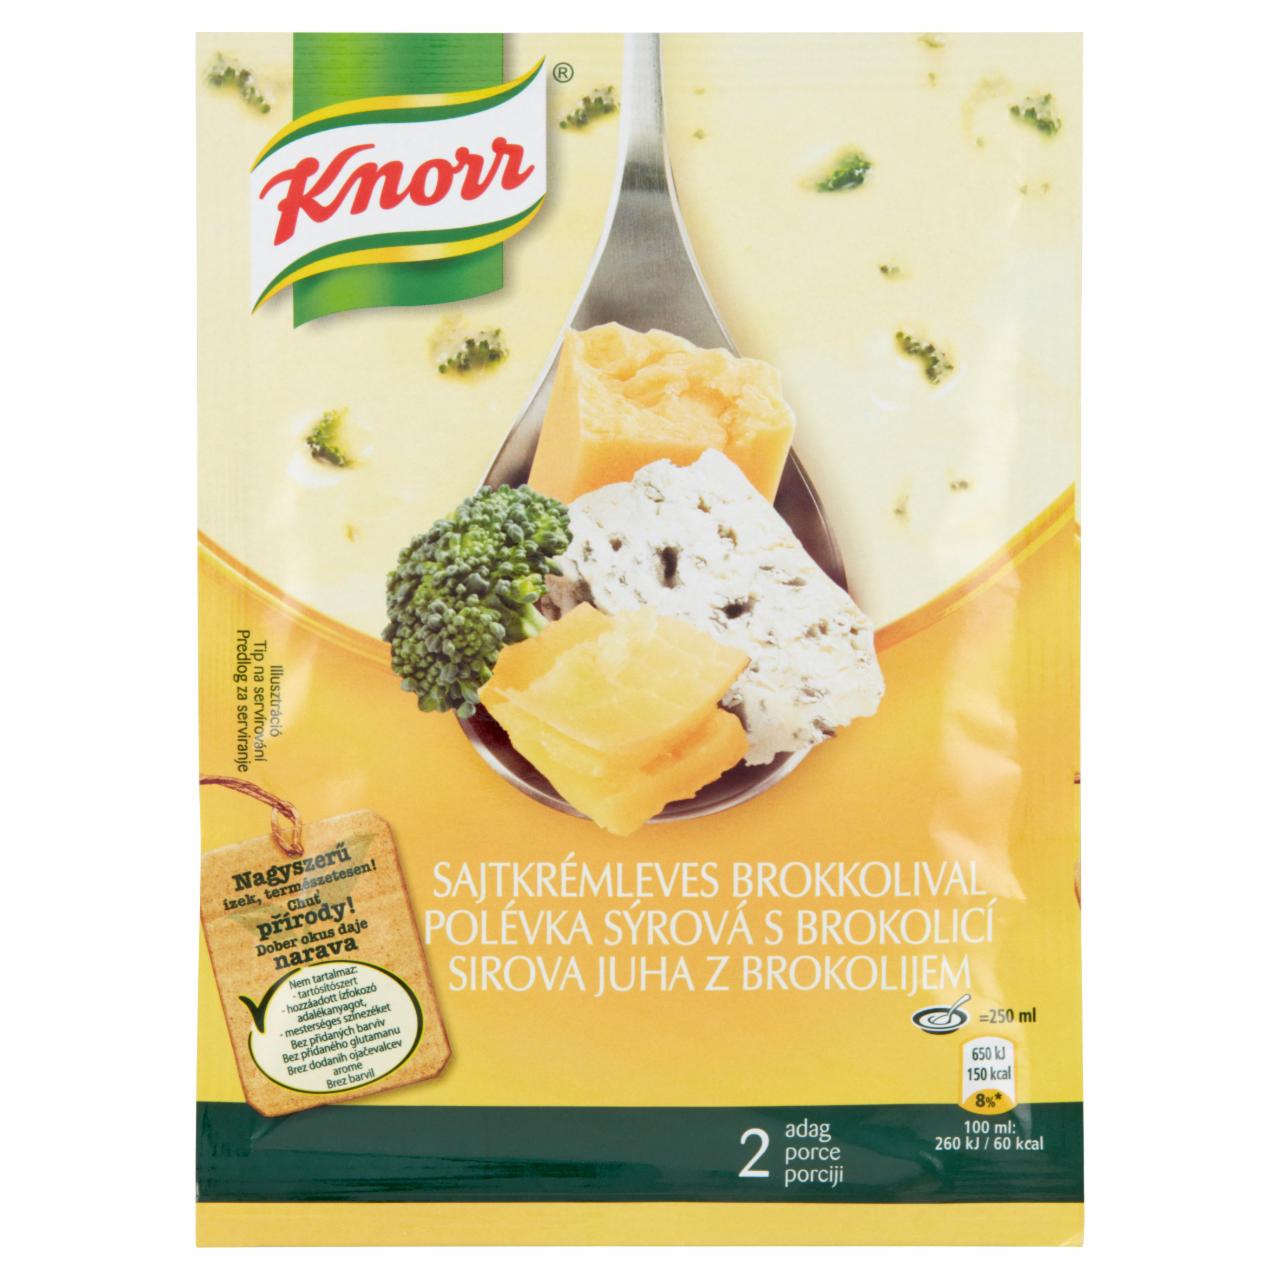 Képek - Knorr sajtkrémleves brokkolival 43 g